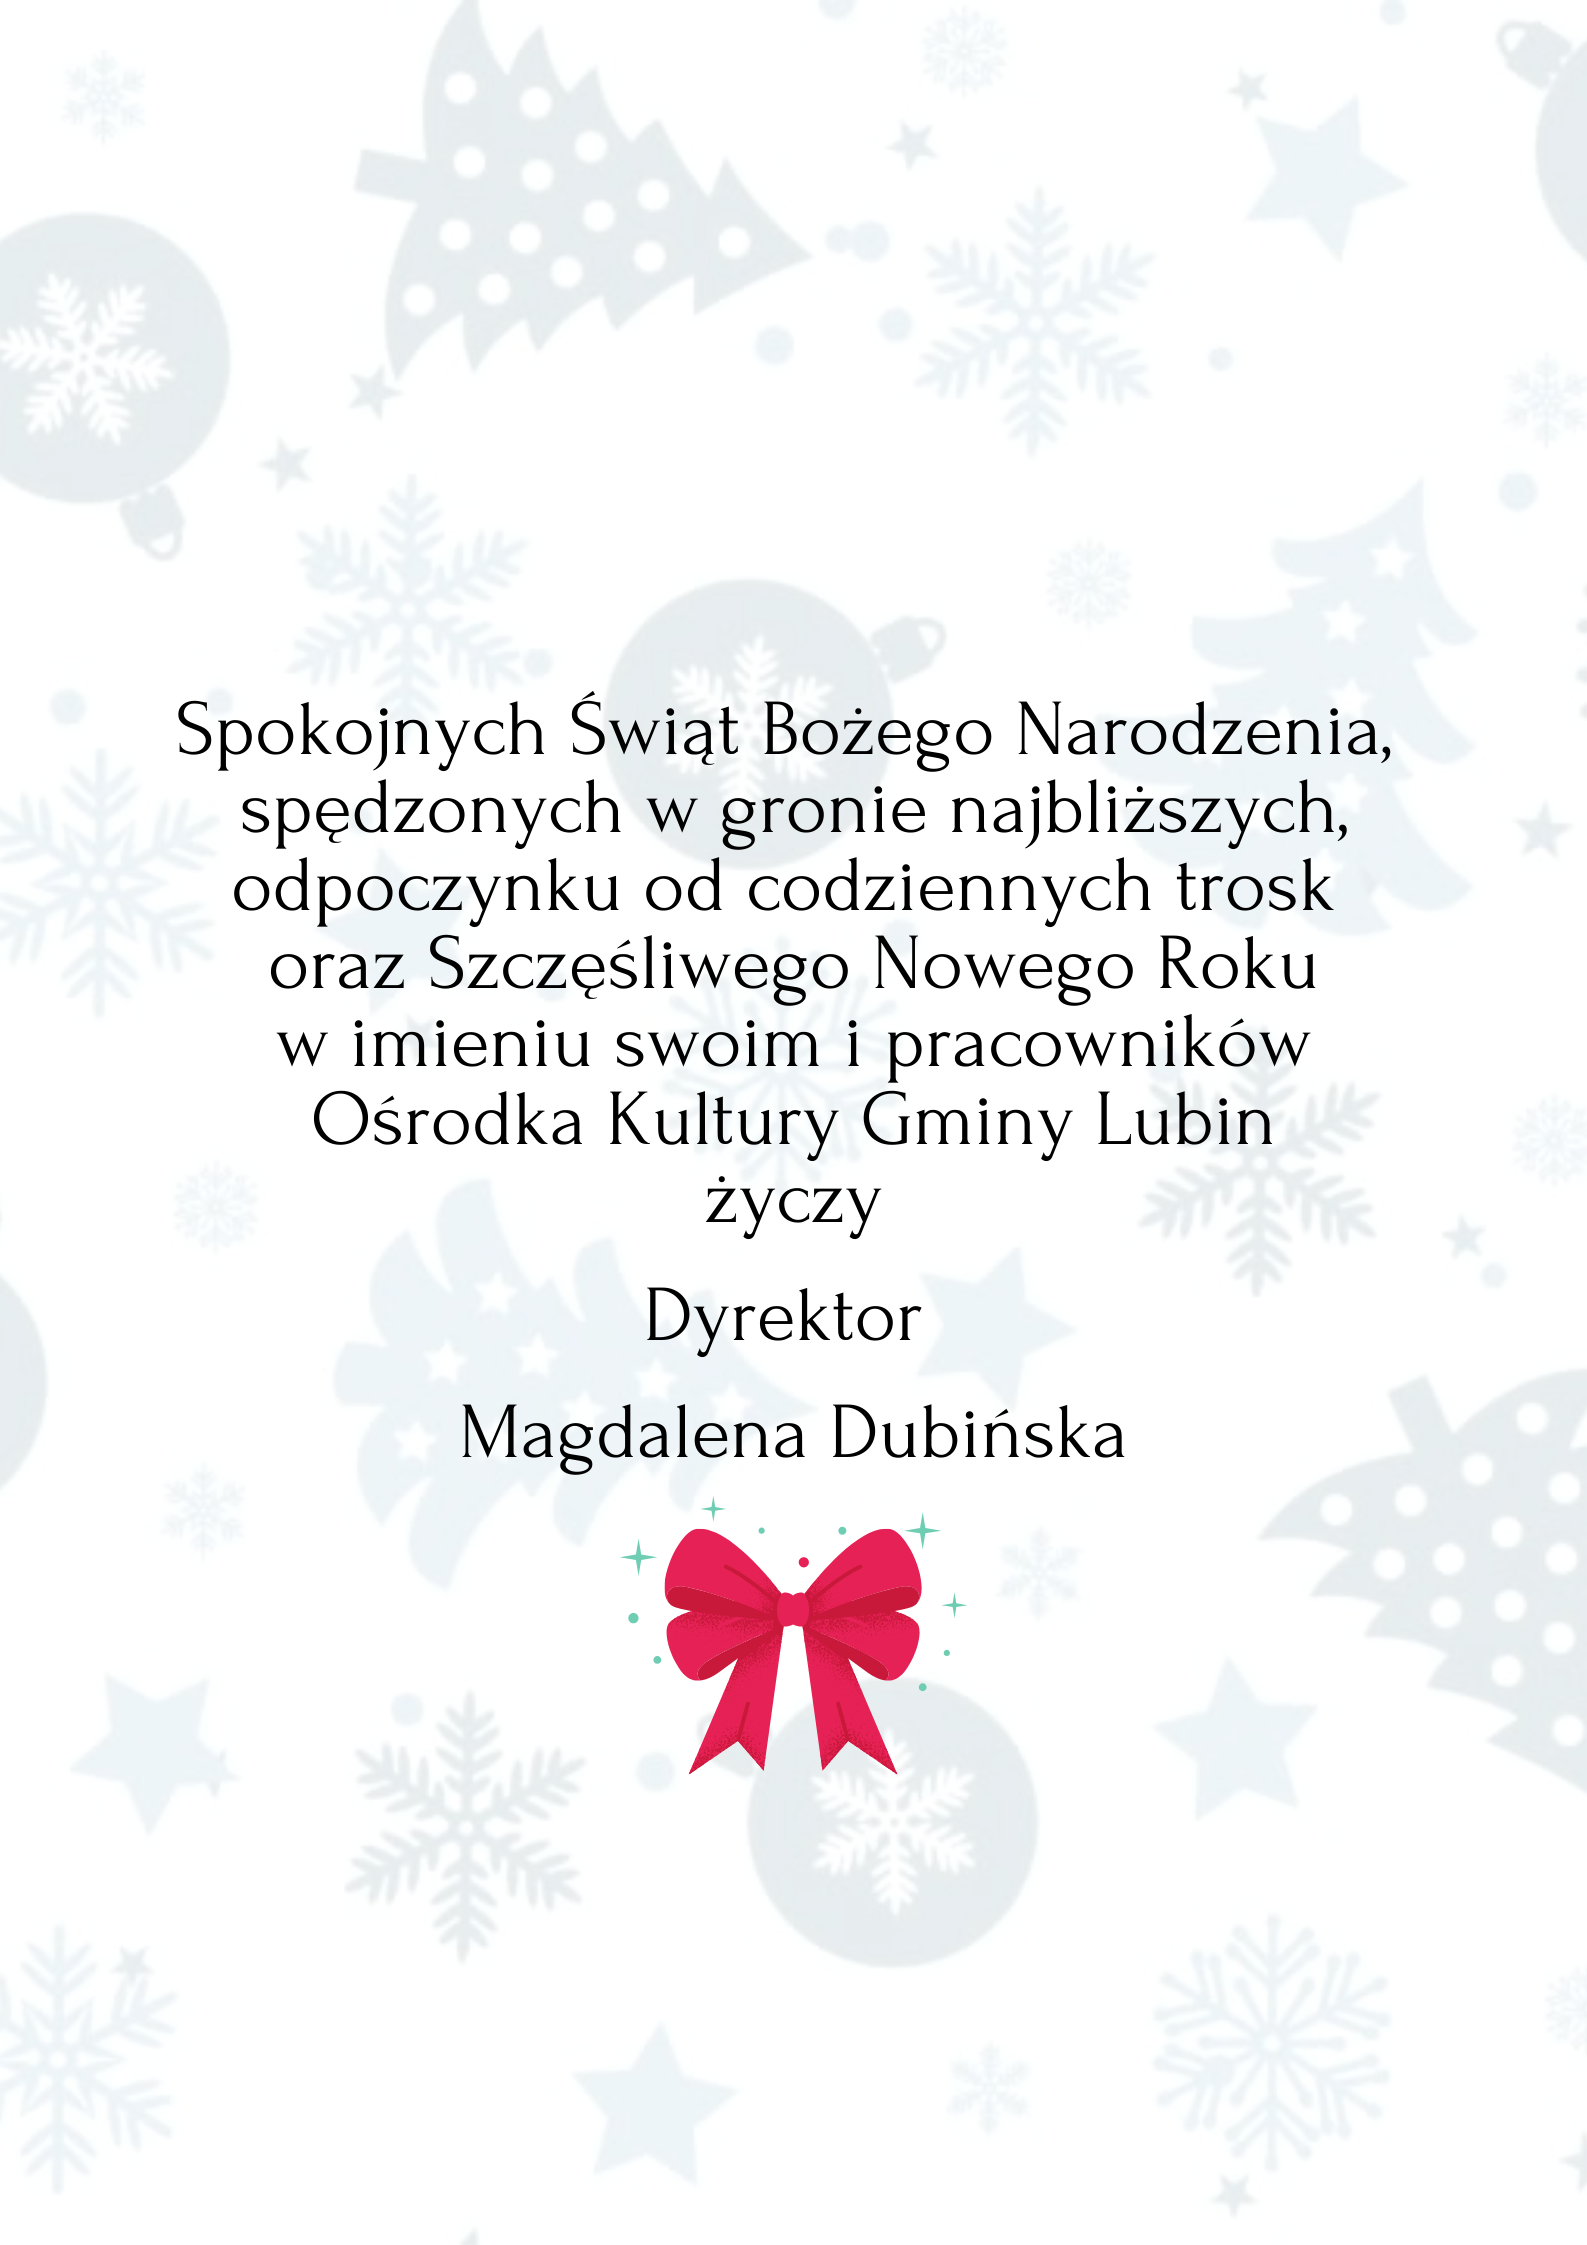 Spokojnych Świąt Bożego Narodzenia, spędzonych w gronie najbliższych, odpoczynku od codziennych trosk oraz Szczęśliwego Nowego Roku w imieniu swoim i pracowników Ośrodka Kultury Gminy Lubin życzy Dyrektor Magdalena Dubińska